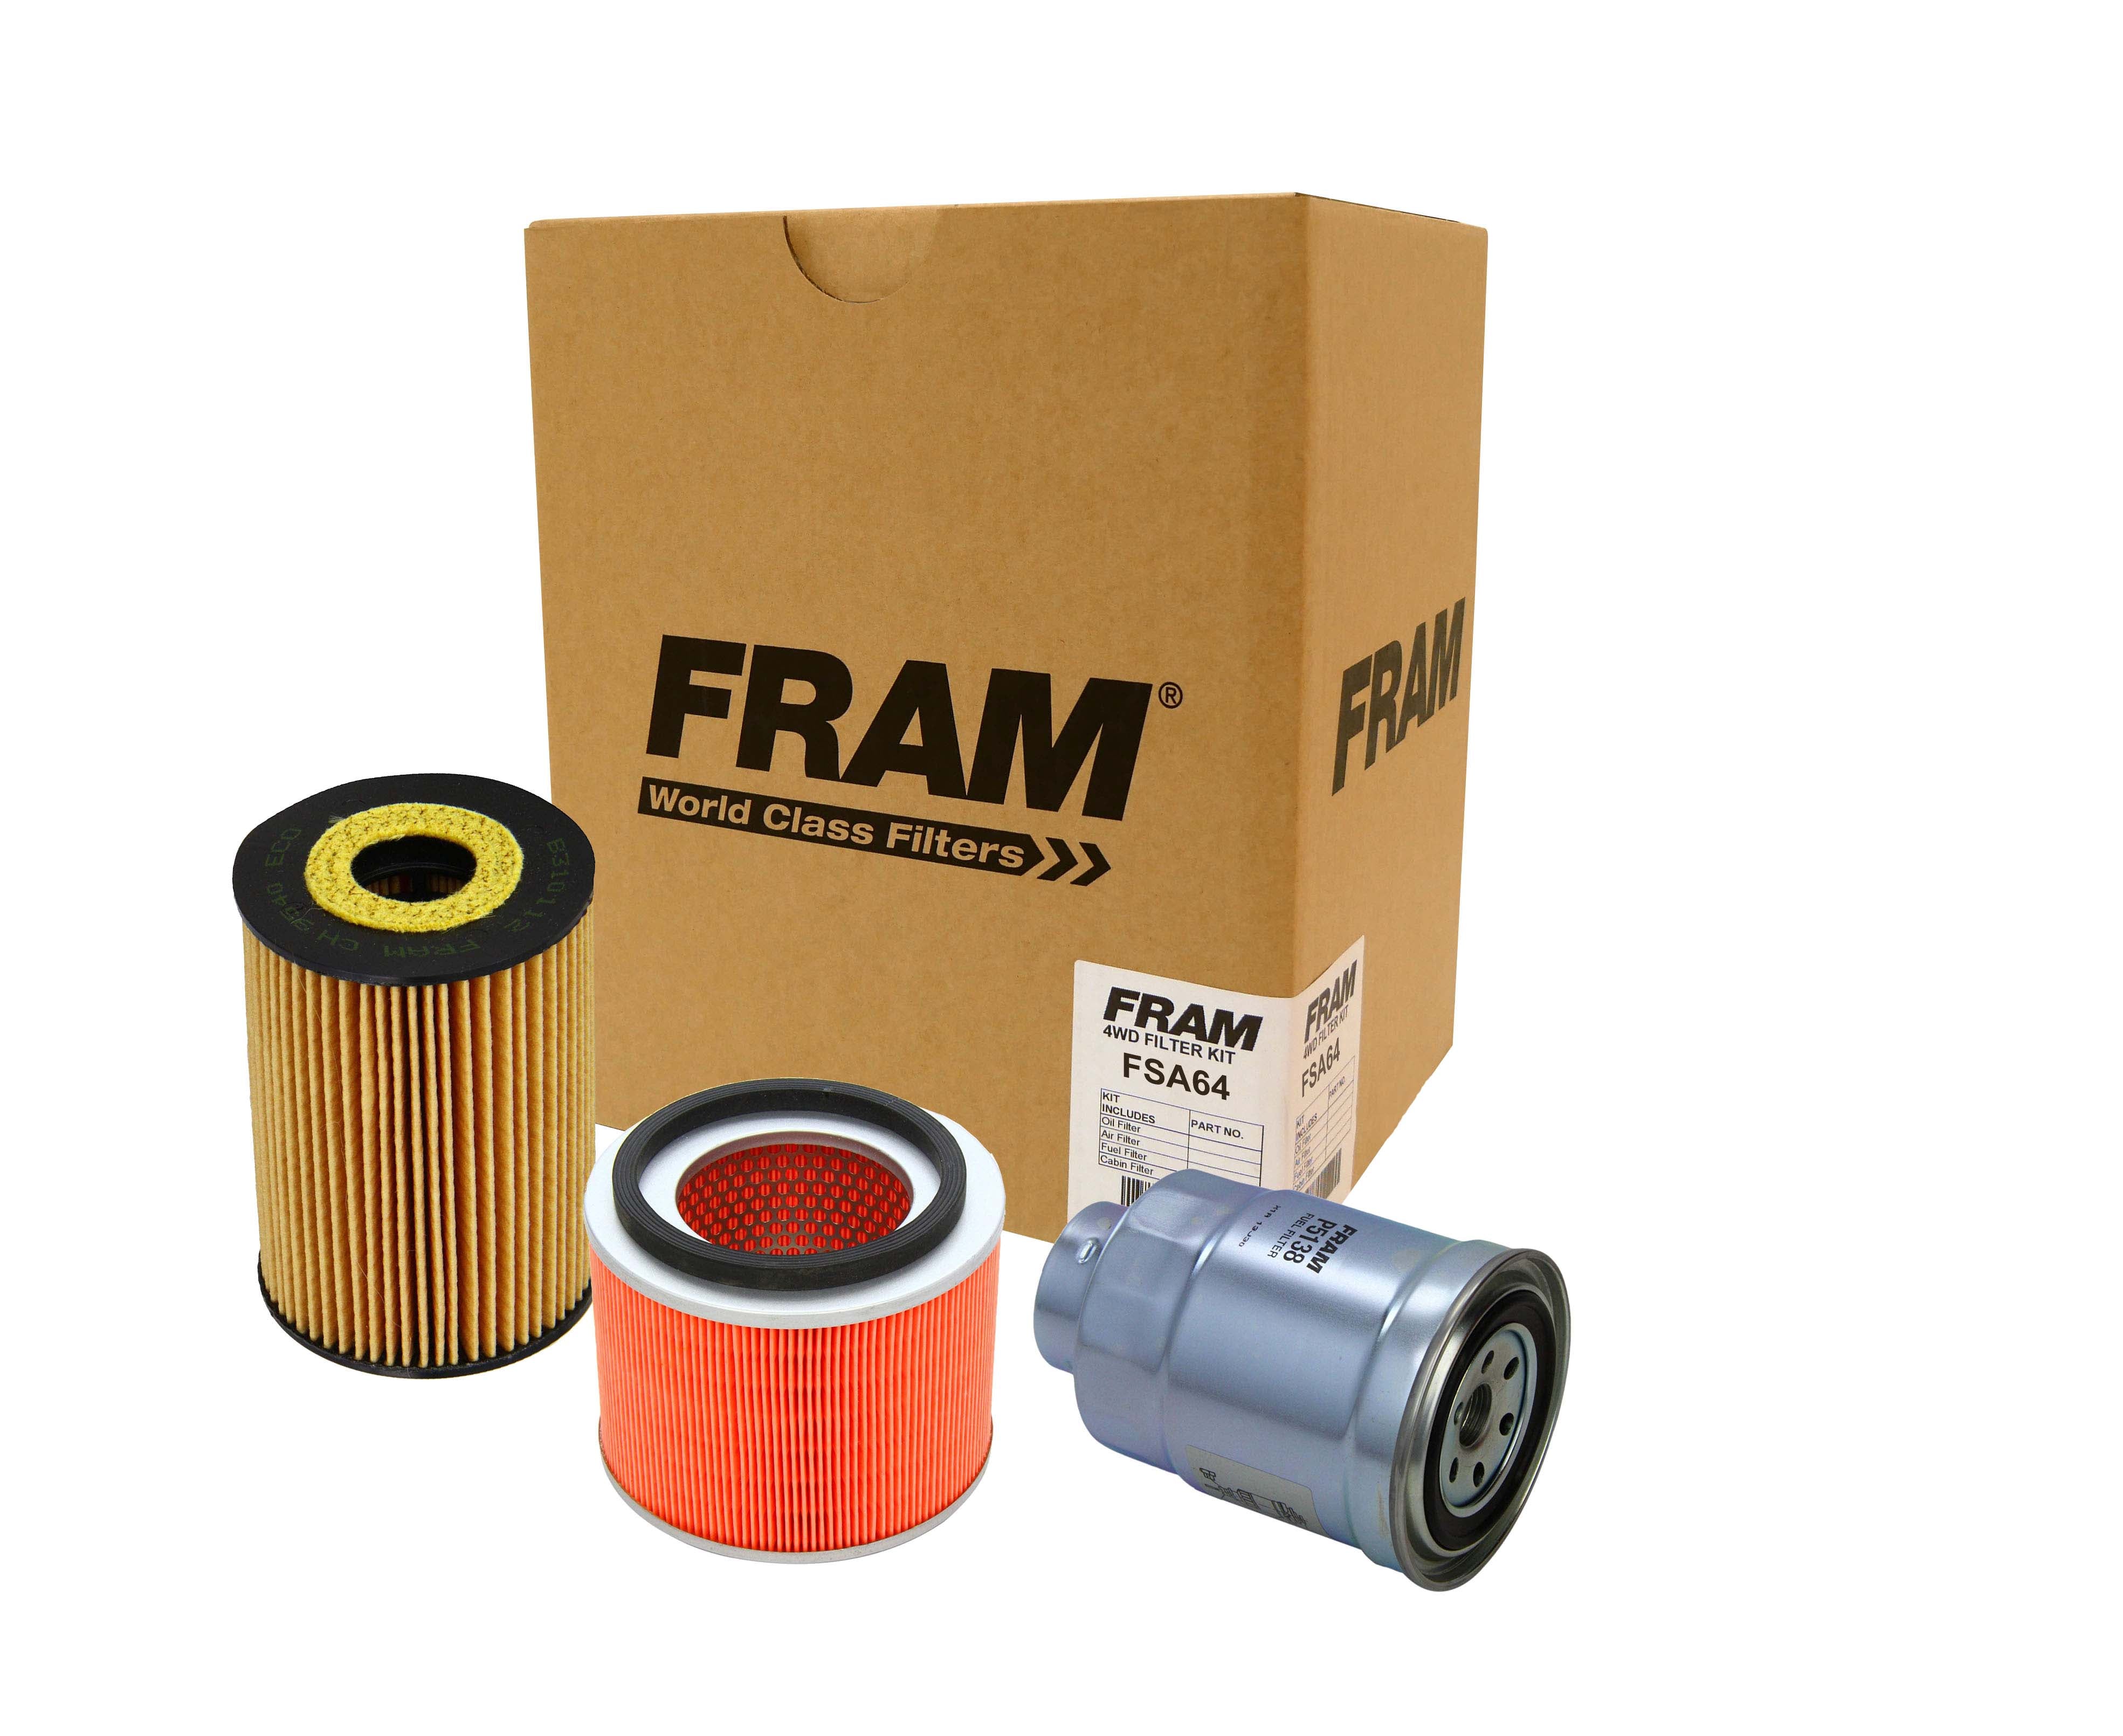 FRAM 4wd Filter Kit for Nissan Patrol GU ZD30 DI 3.0ltr | FRAM